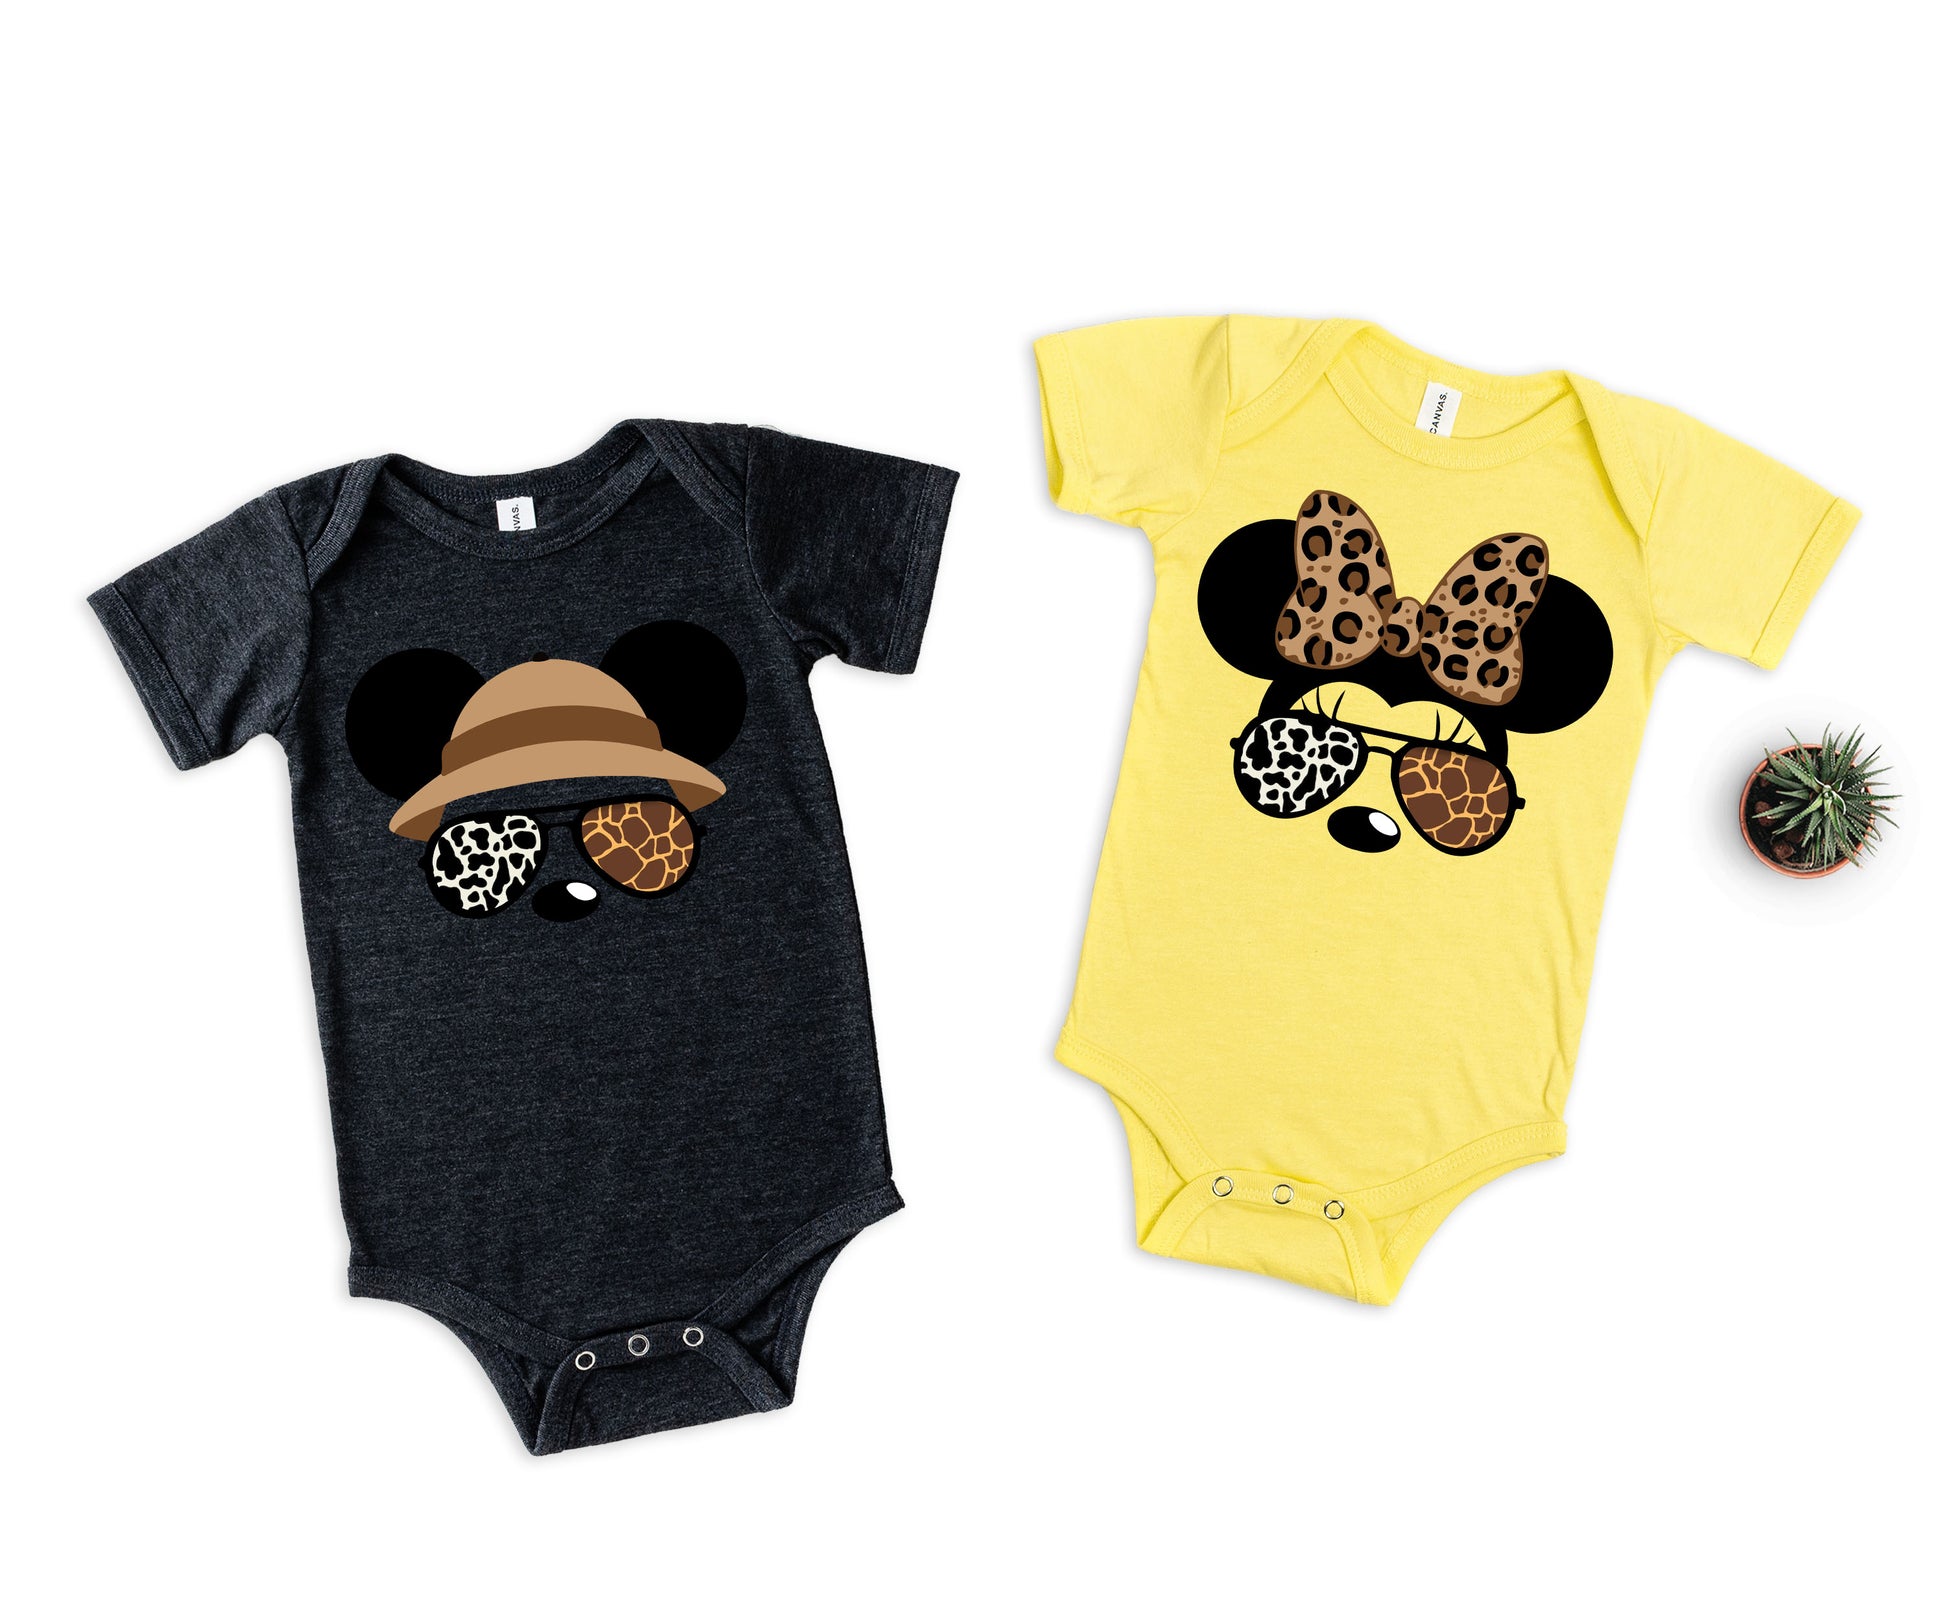 Disney Safari Shirts, Disney Animal Kingdom Family Shirts, Disney Family Matching Shirts-newamarketing